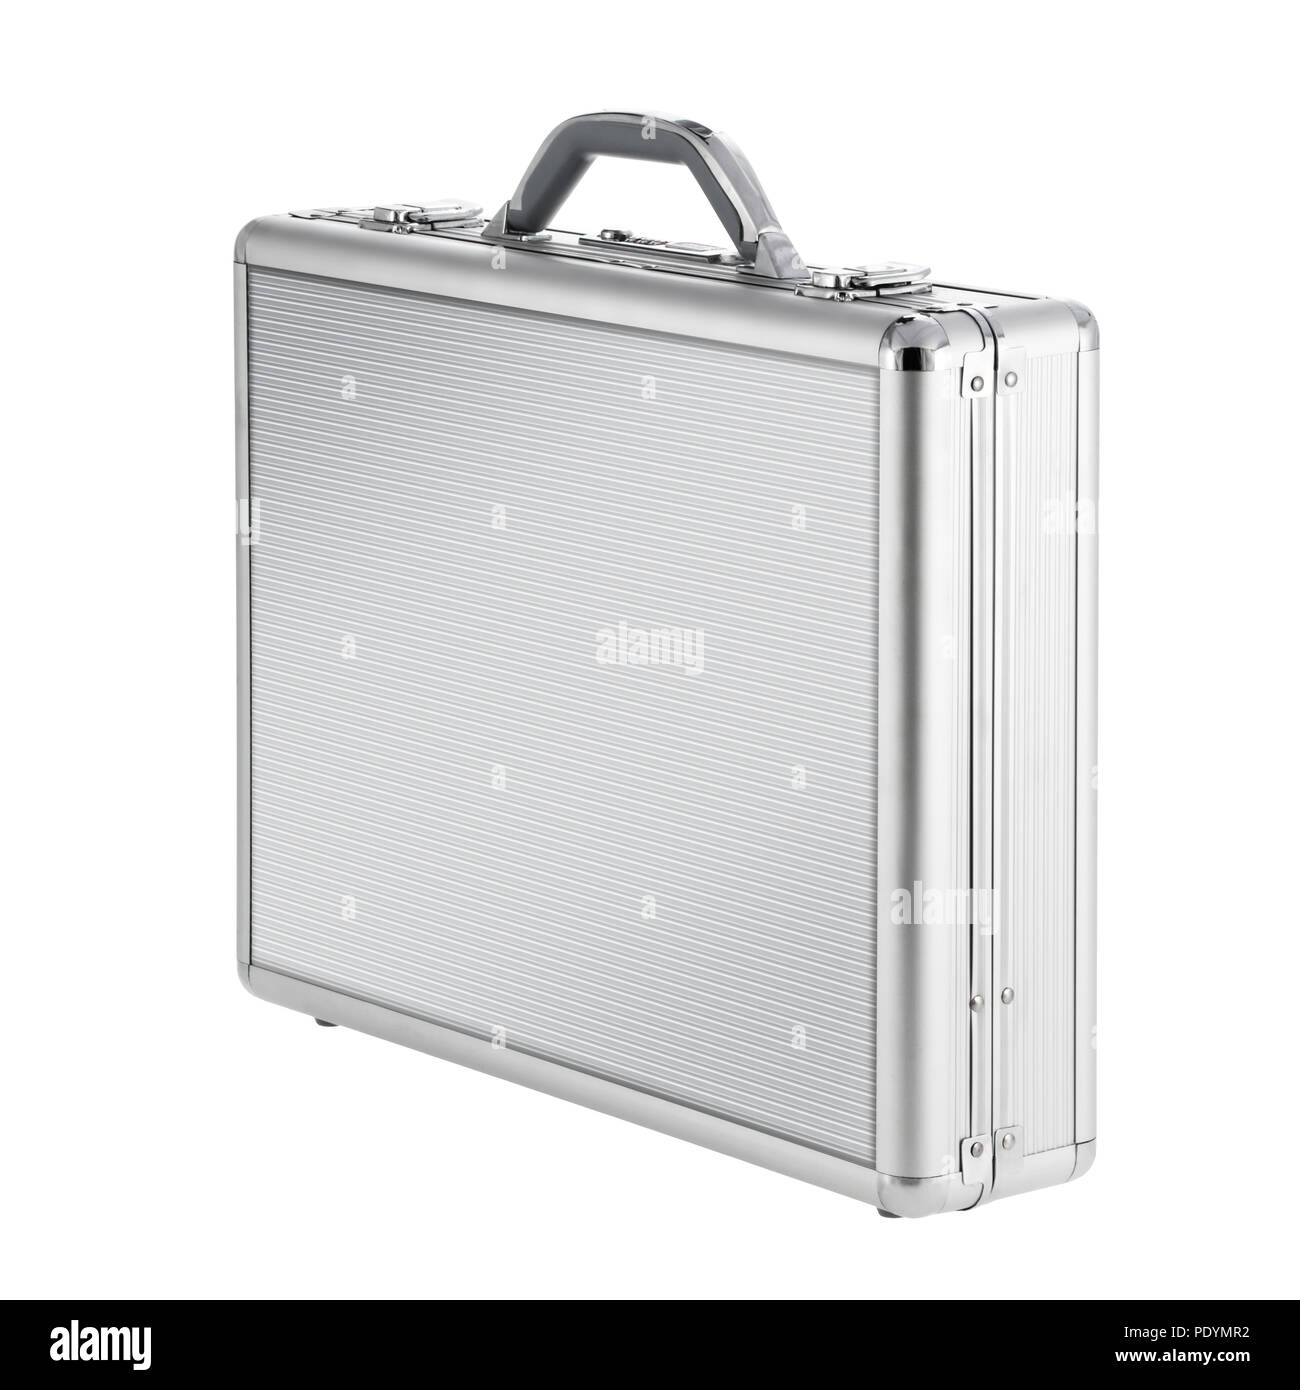 Metall Aktenkoffer isoliert auf weißem Hintergrund Stockfotografie - Alamy